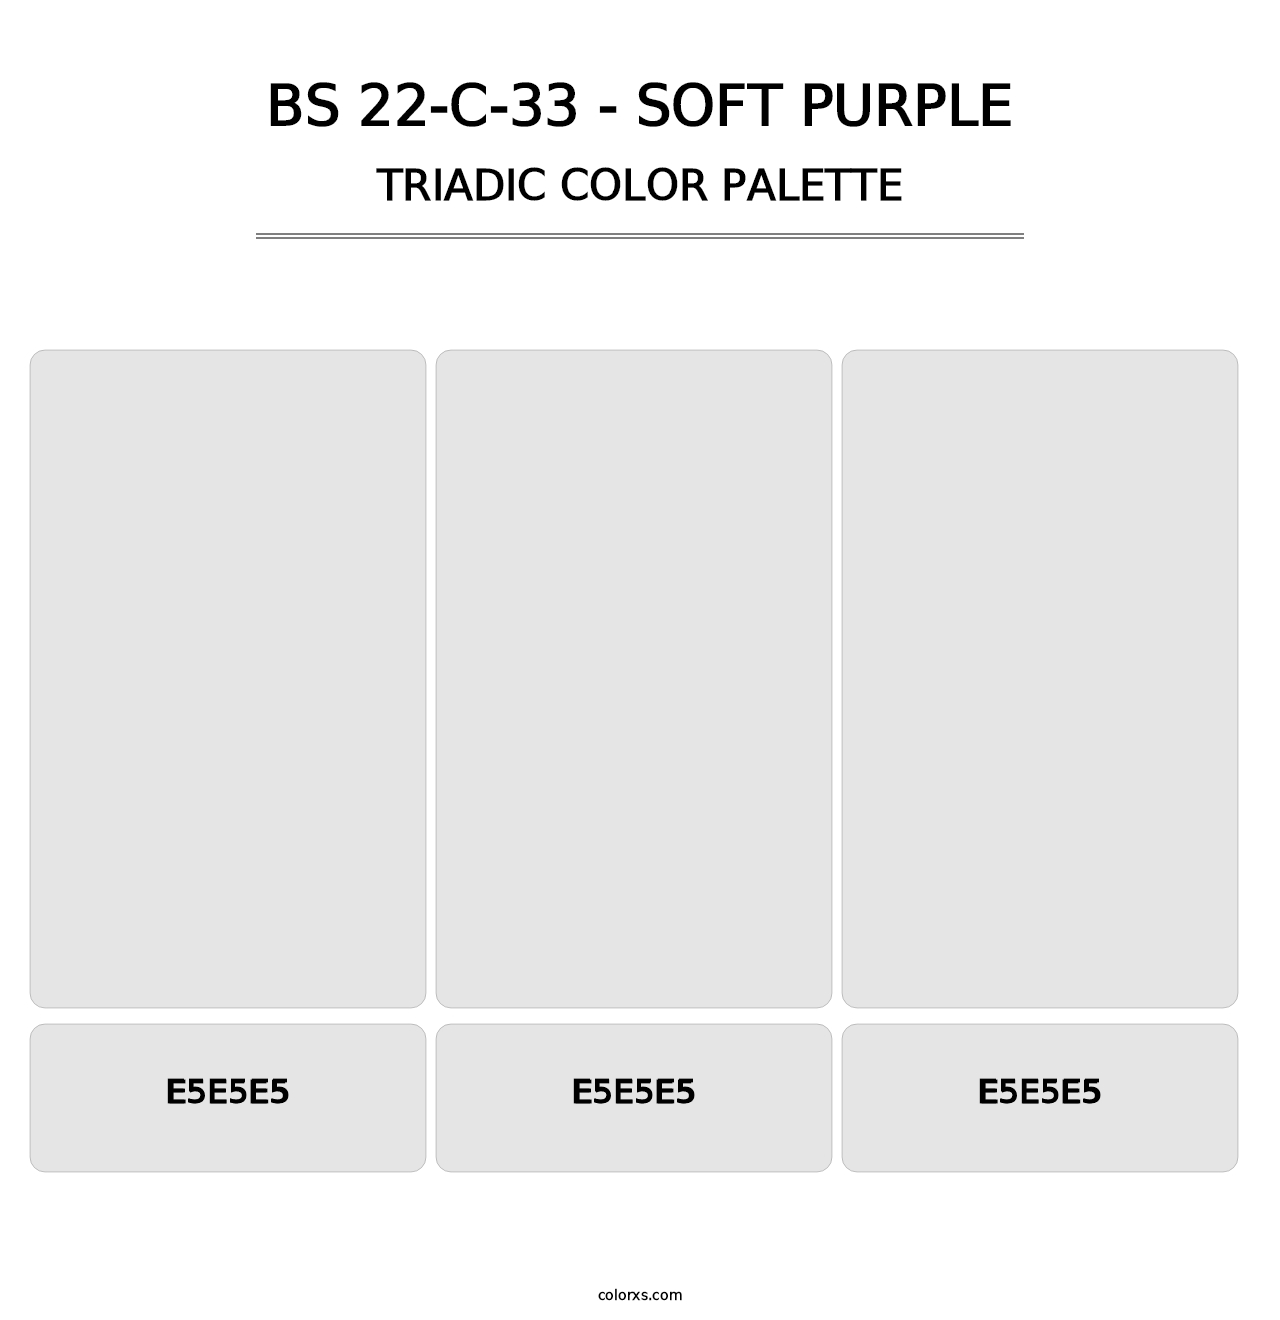 BS 22-C-33 - Soft Purple - Triadic Color Palette